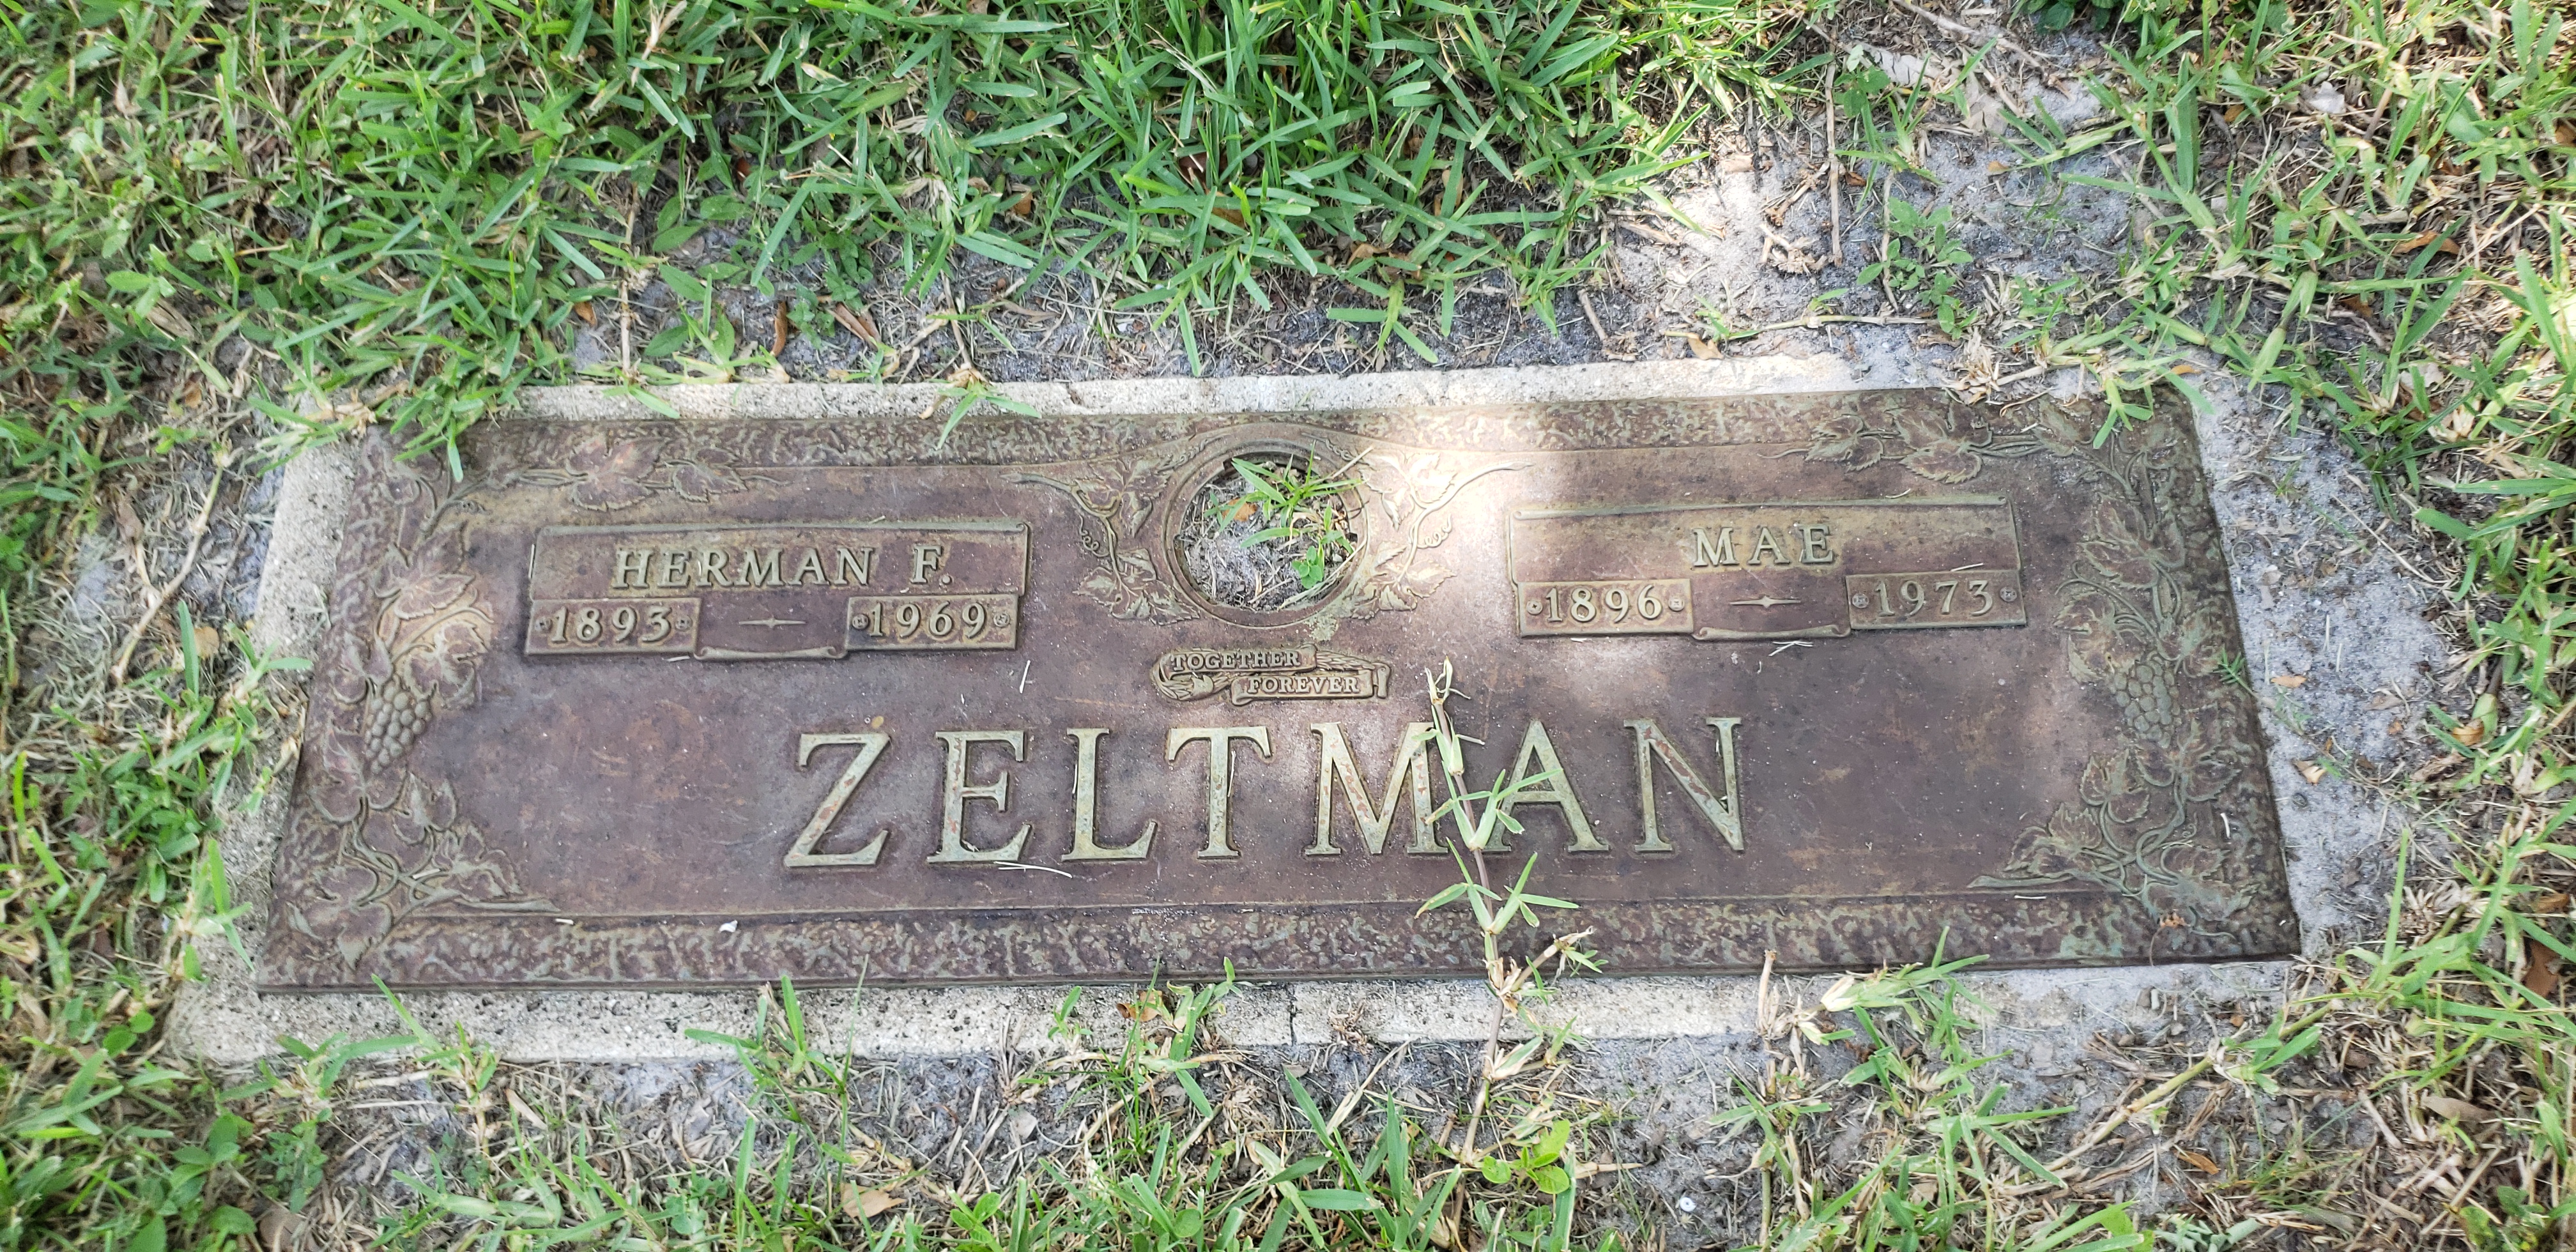 Herman F Zeltman